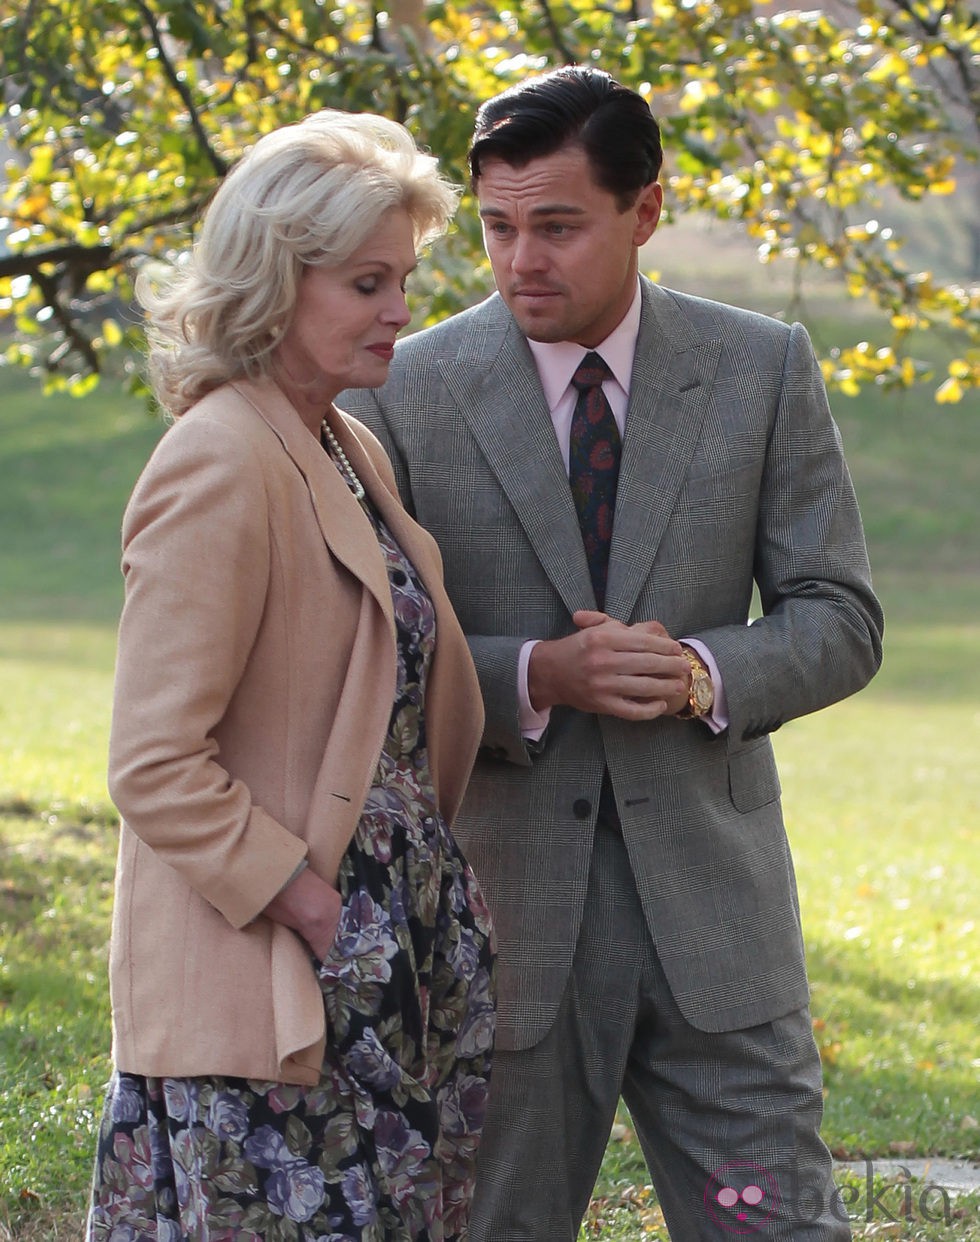 Joanna Lumley y Leonardo DiCaprio conversan en un parque